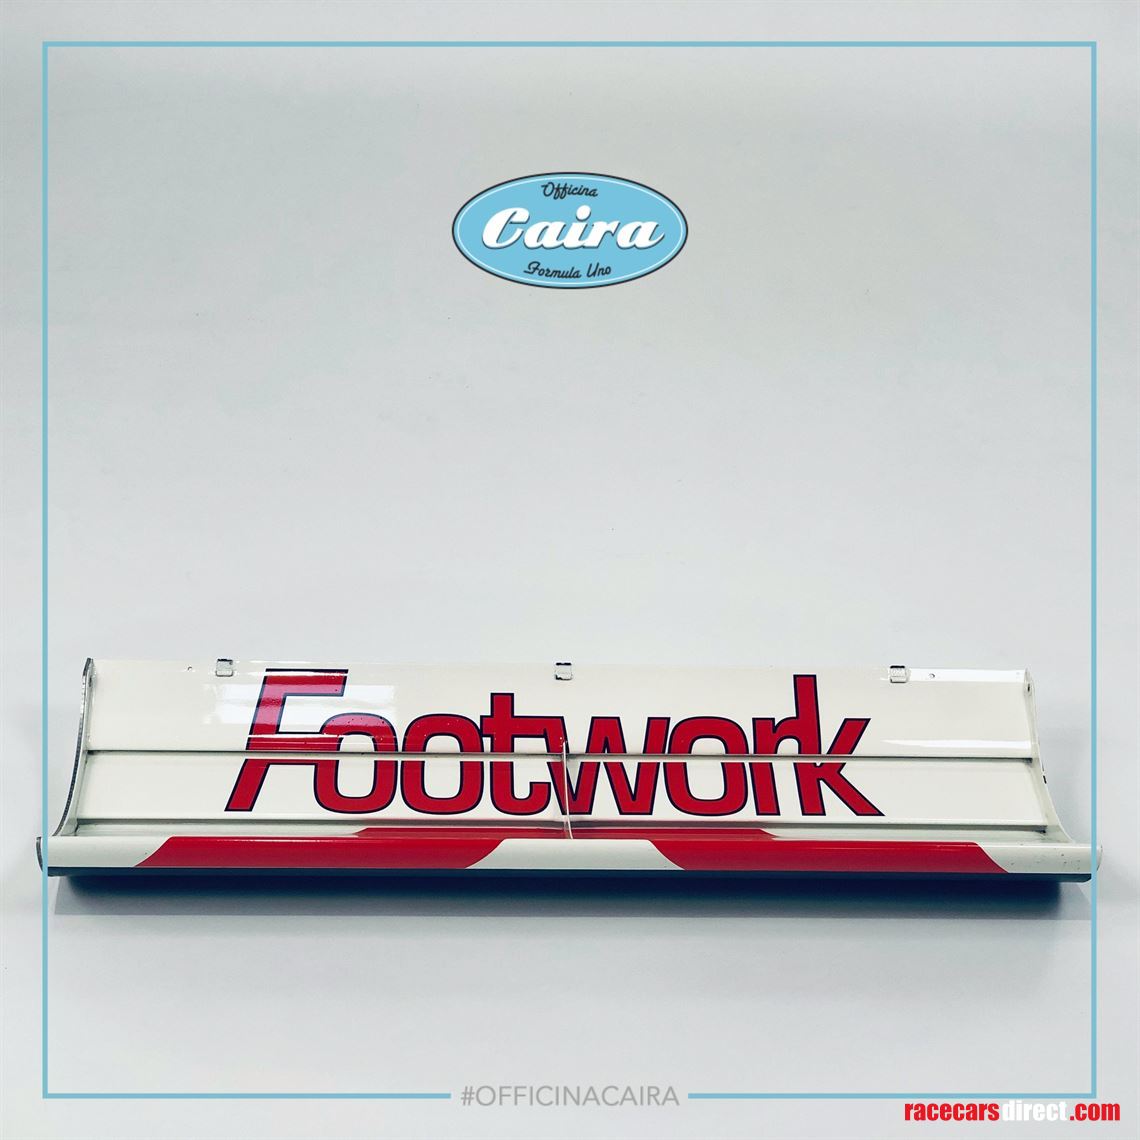 footwork-formula-one-a11c-porsche-v12-1991-re